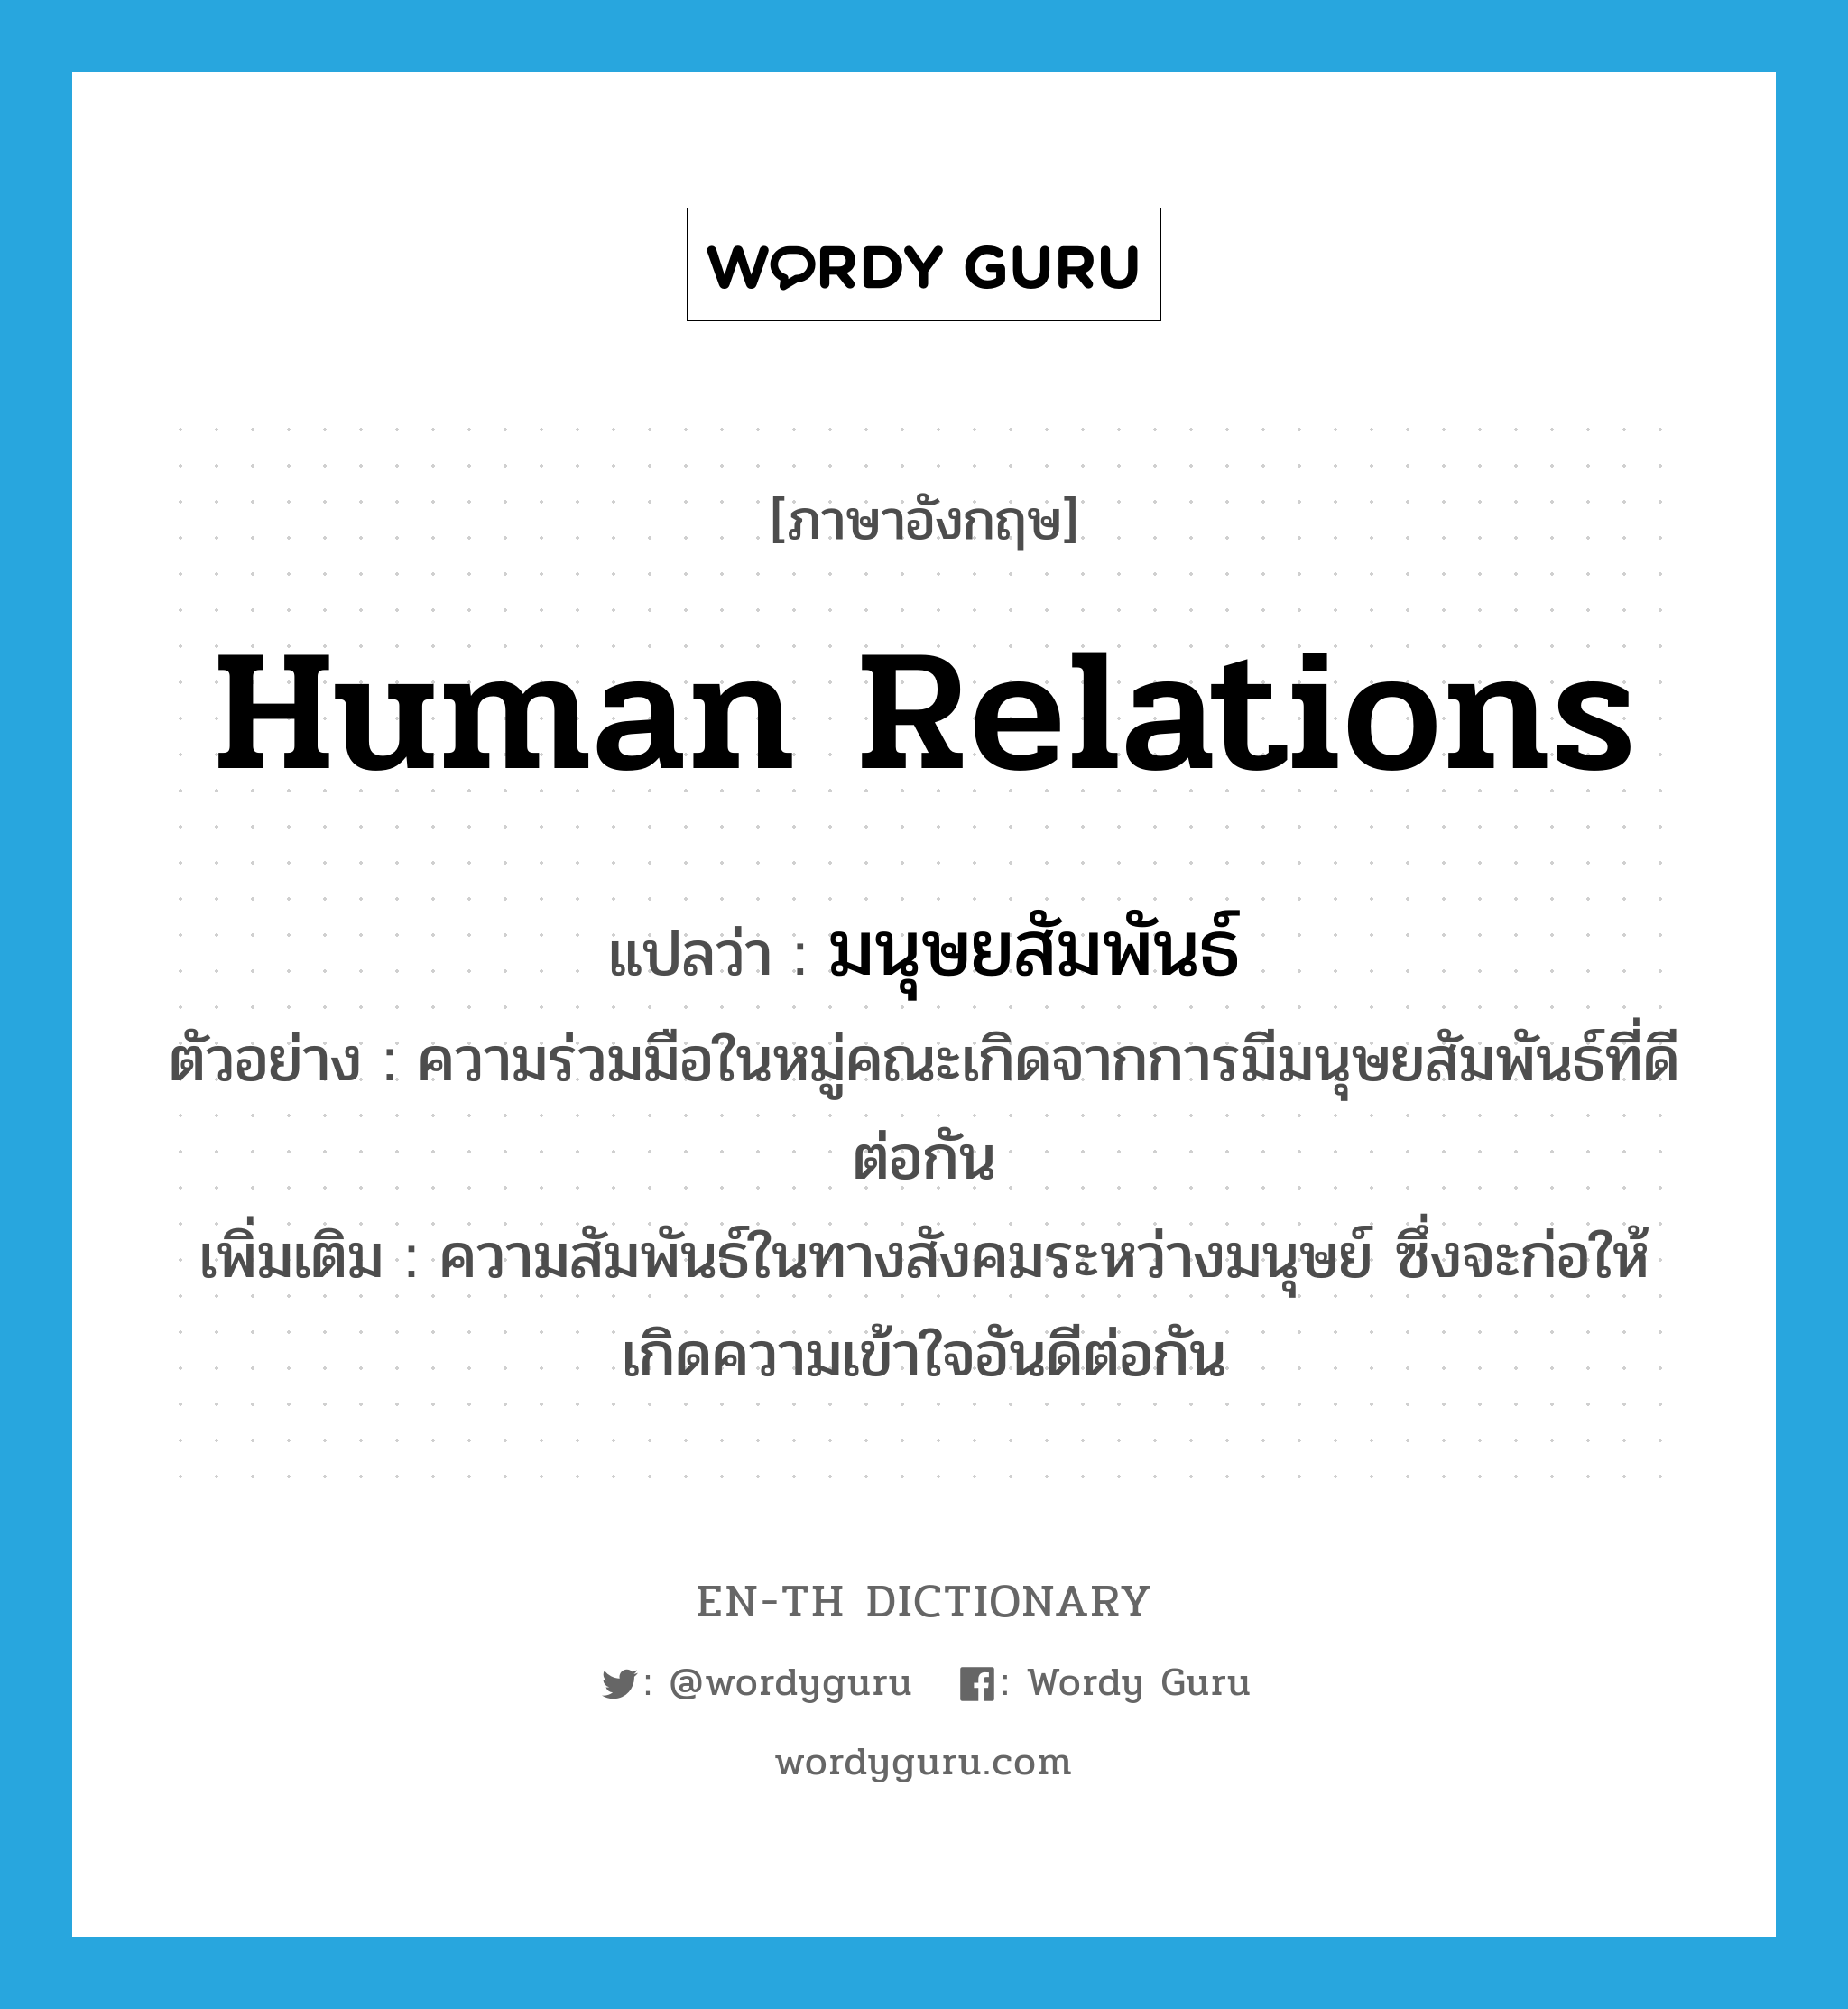 human relations แปลว่า?, คำศัพท์ภาษาอังกฤษ human relations แปลว่า มนุษยสัมพันธ์ ประเภท N ตัวอย่าง ความร่วมมือในหมู่คณะเกิดจากการมีมนุษยสัมพันธ์ที่ดีต่อกัน เพิ่มเติม ความสัมพันธ์ในทางสังคมระหว่างมนุษย์ ซึ่งจะก่อให้เกิดความเข้าใจอันดีต่อกัน หมวด N